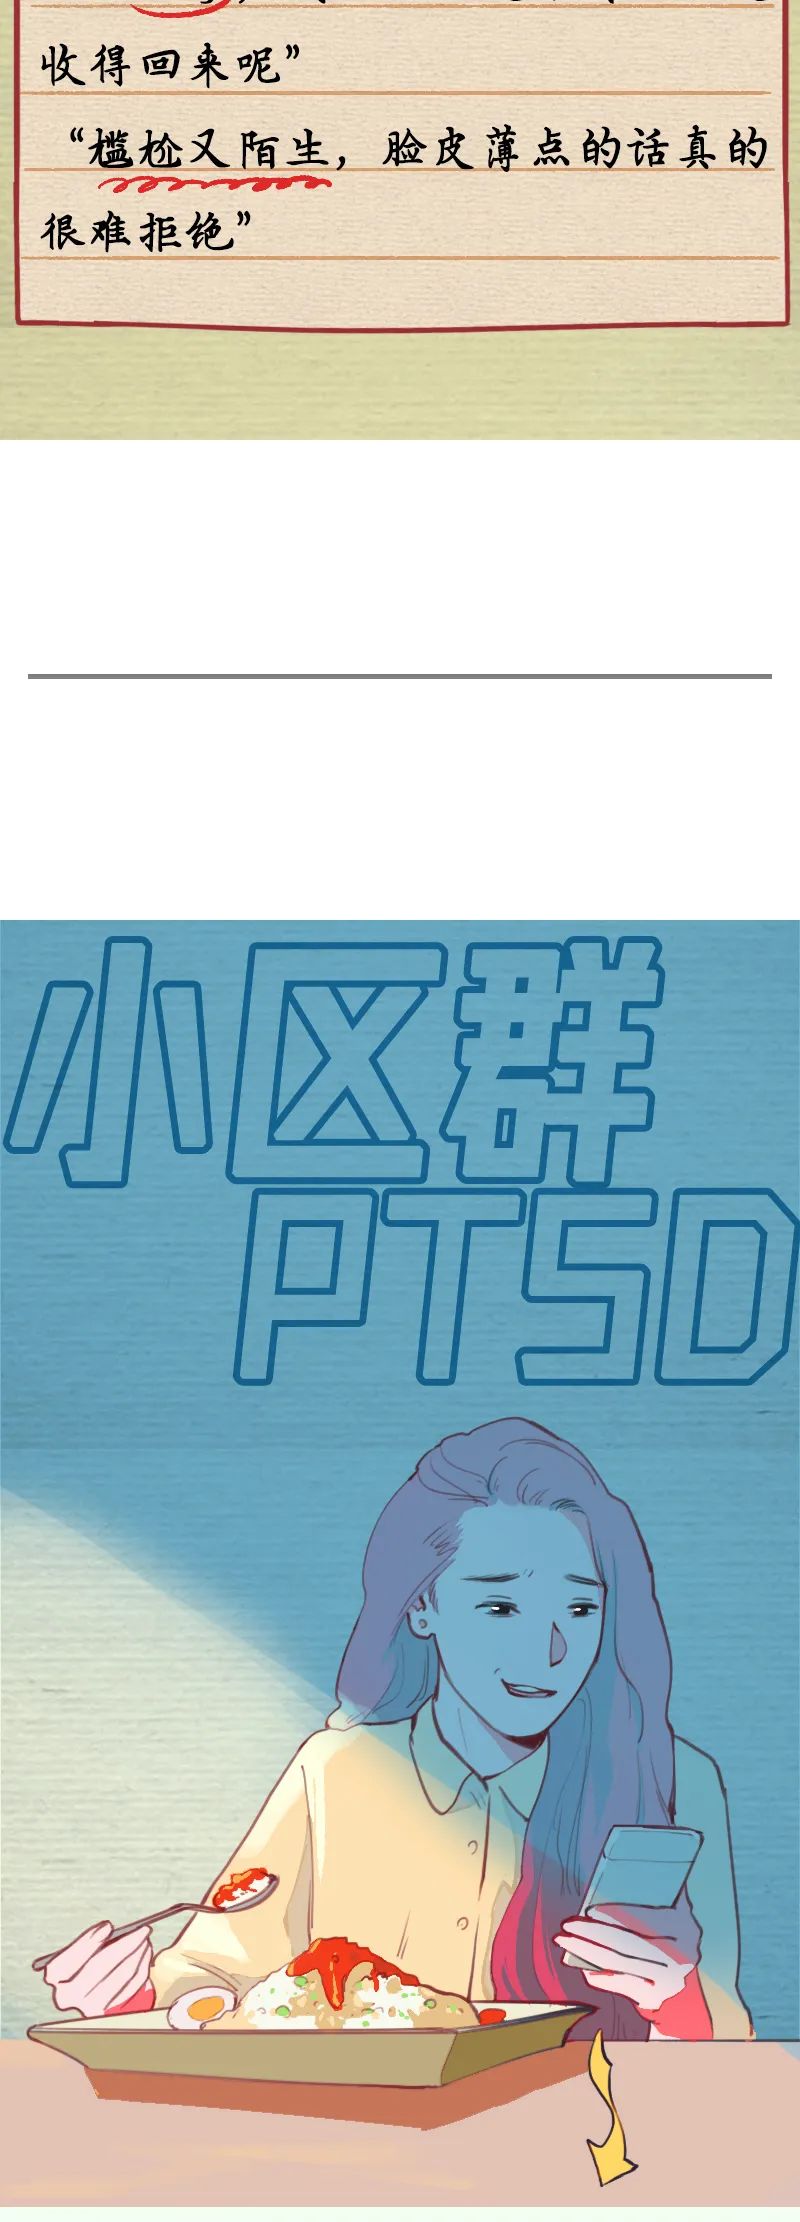 我得了一种叫“微信群PTSD”的病